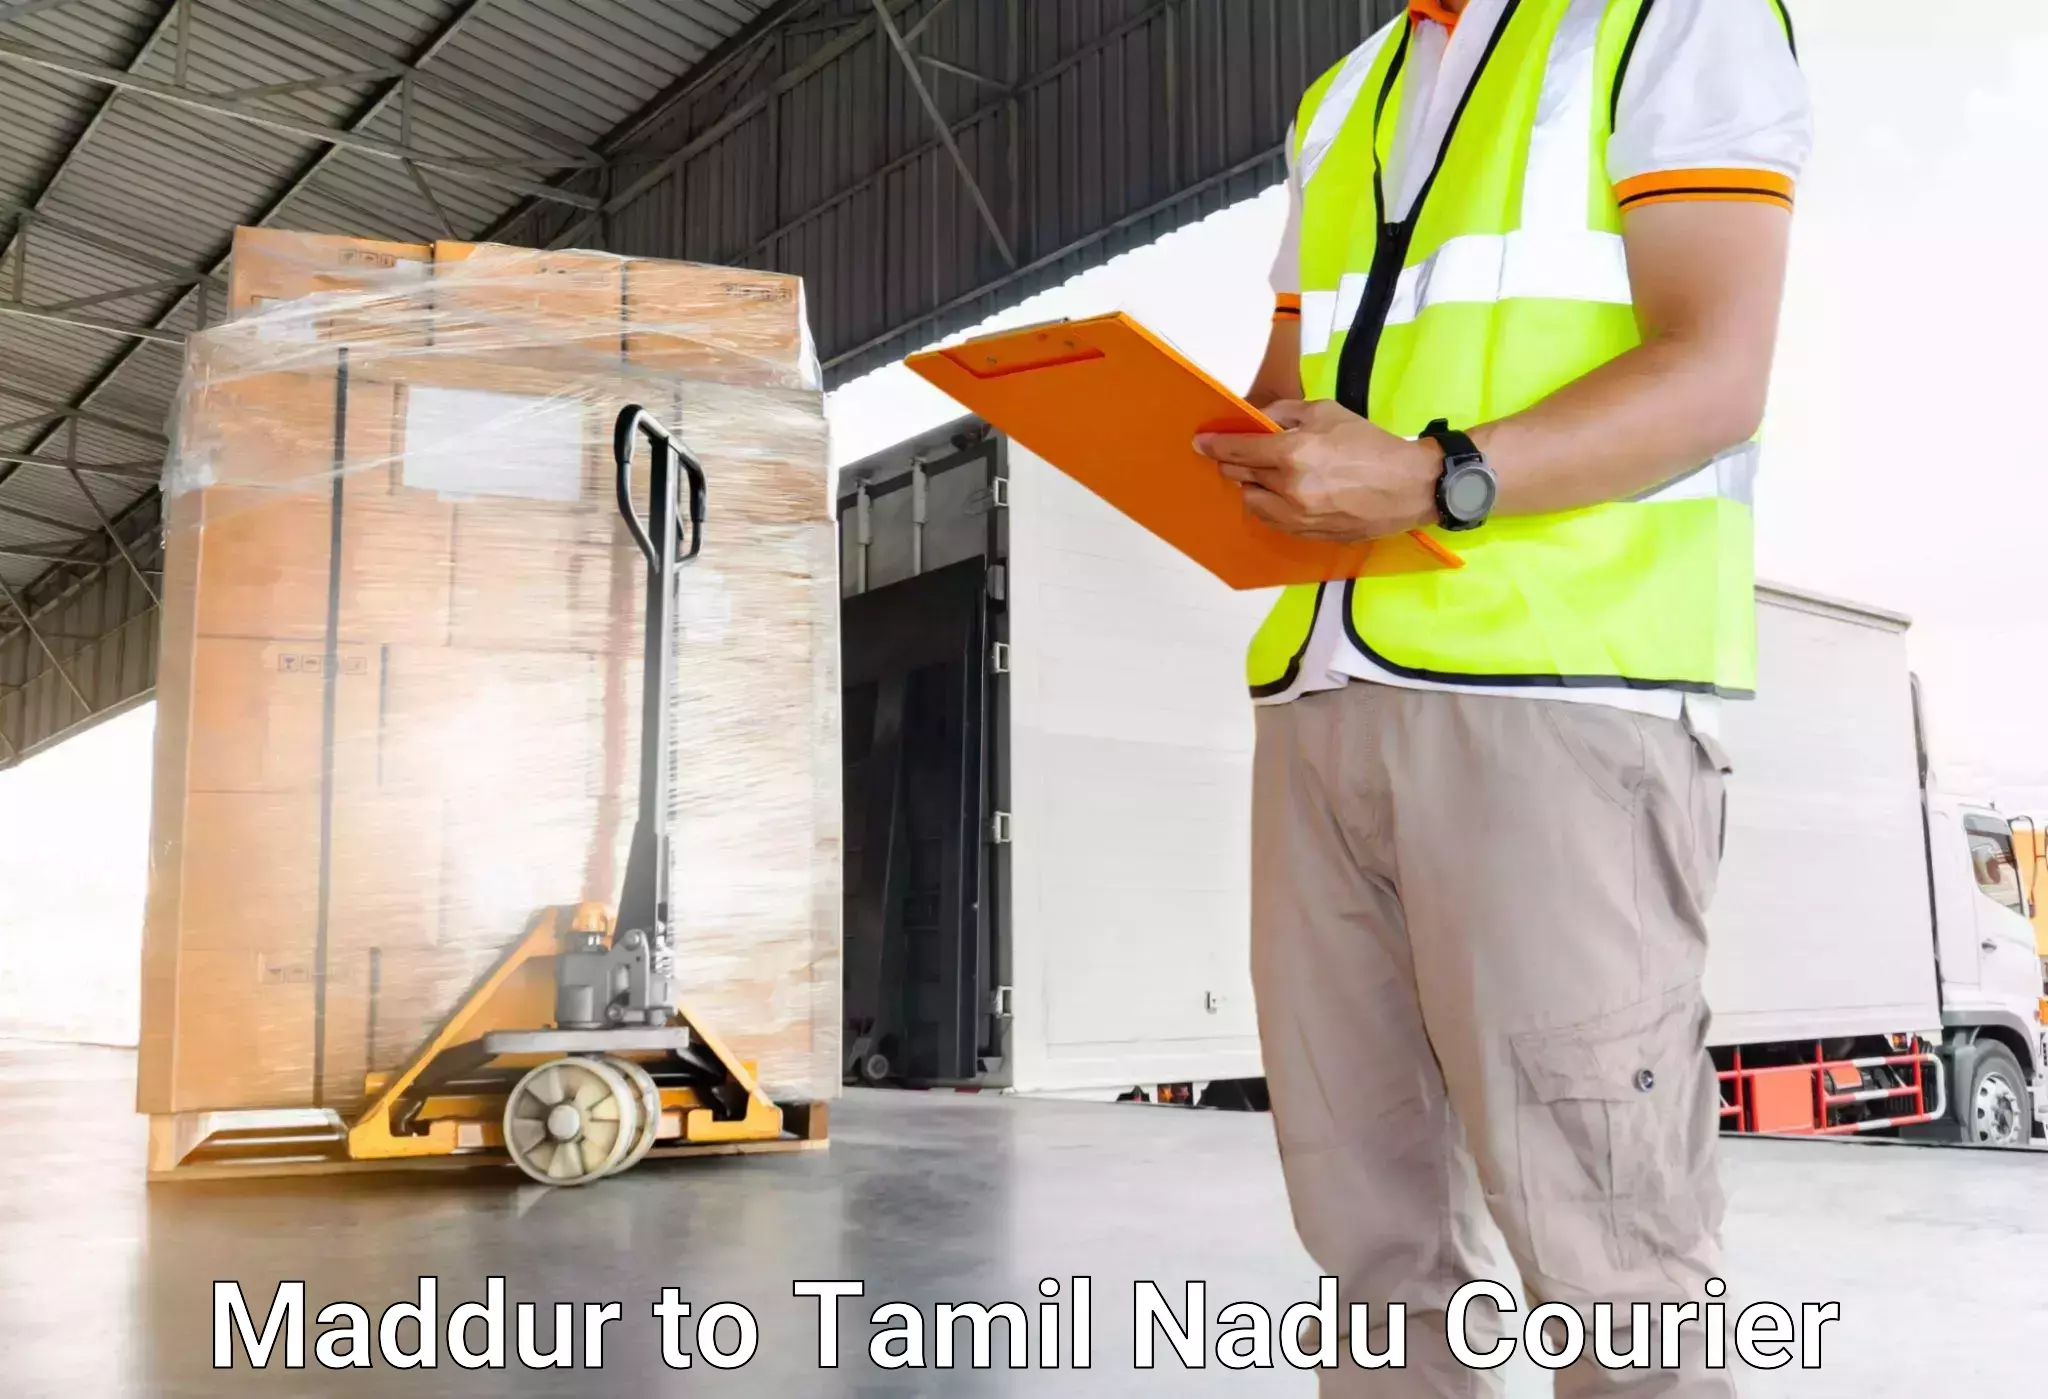 Luggage transport consulting Maddur to Tiruturaipundi